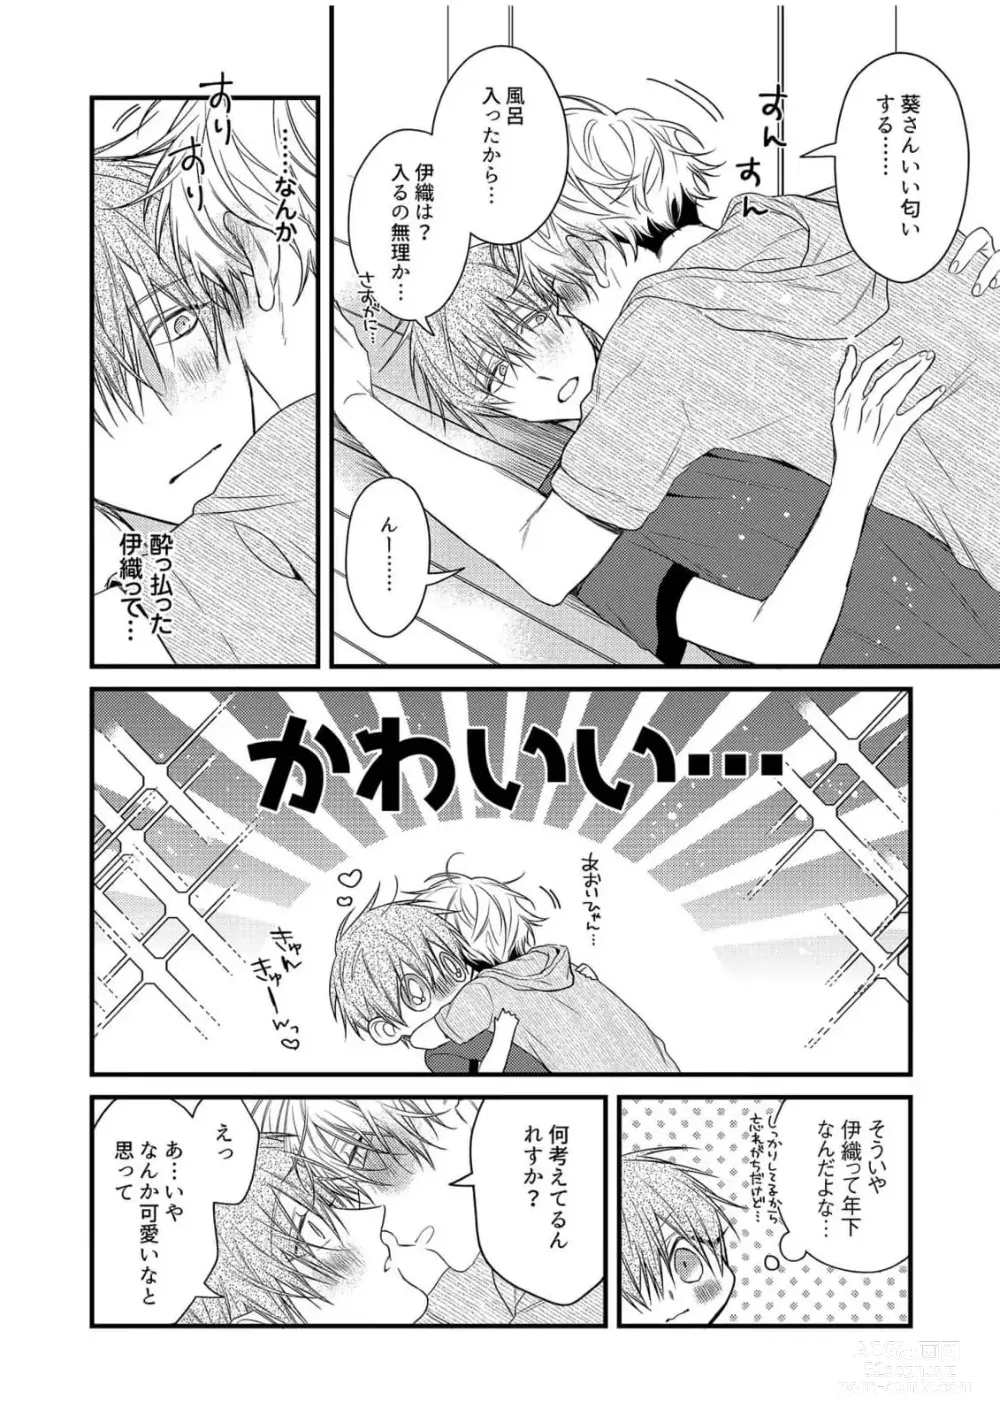 Page 204 of manga Ecchi wa shuu 7 Kibou Desu!